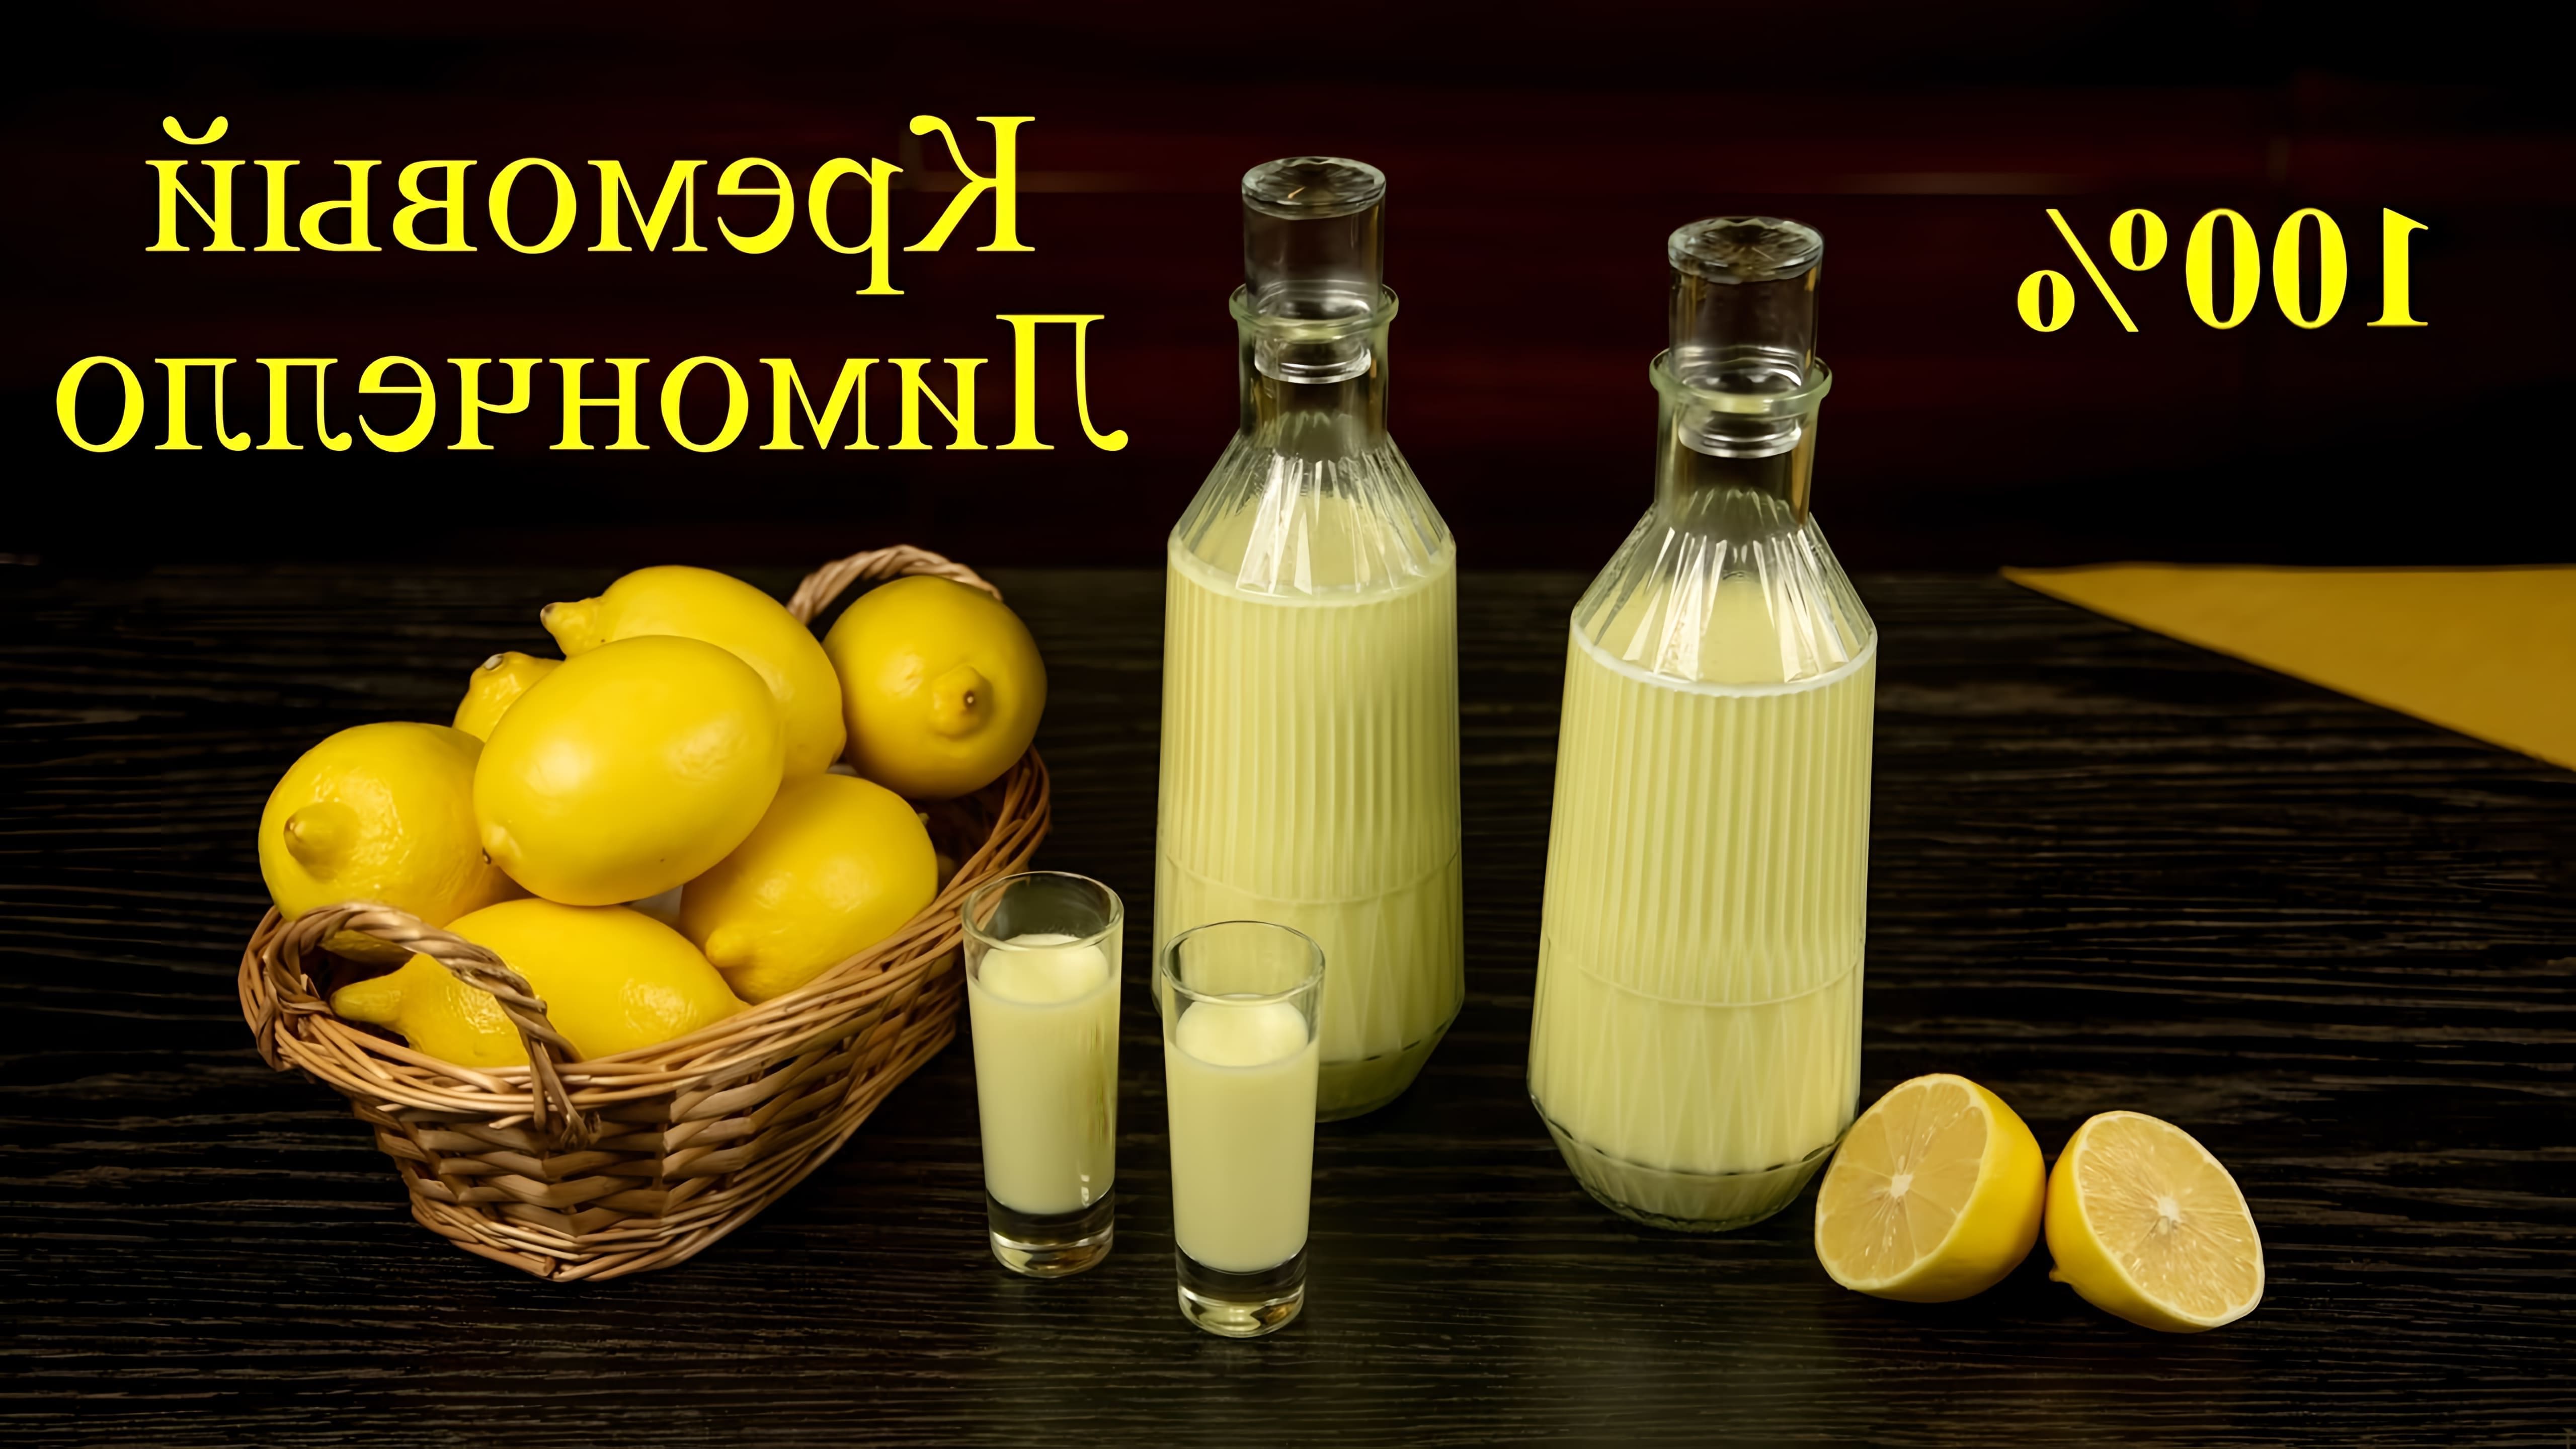 В этом видео рассказывается о том, как приготовить кремовый лимончелло - итальянский ликер из лимонов